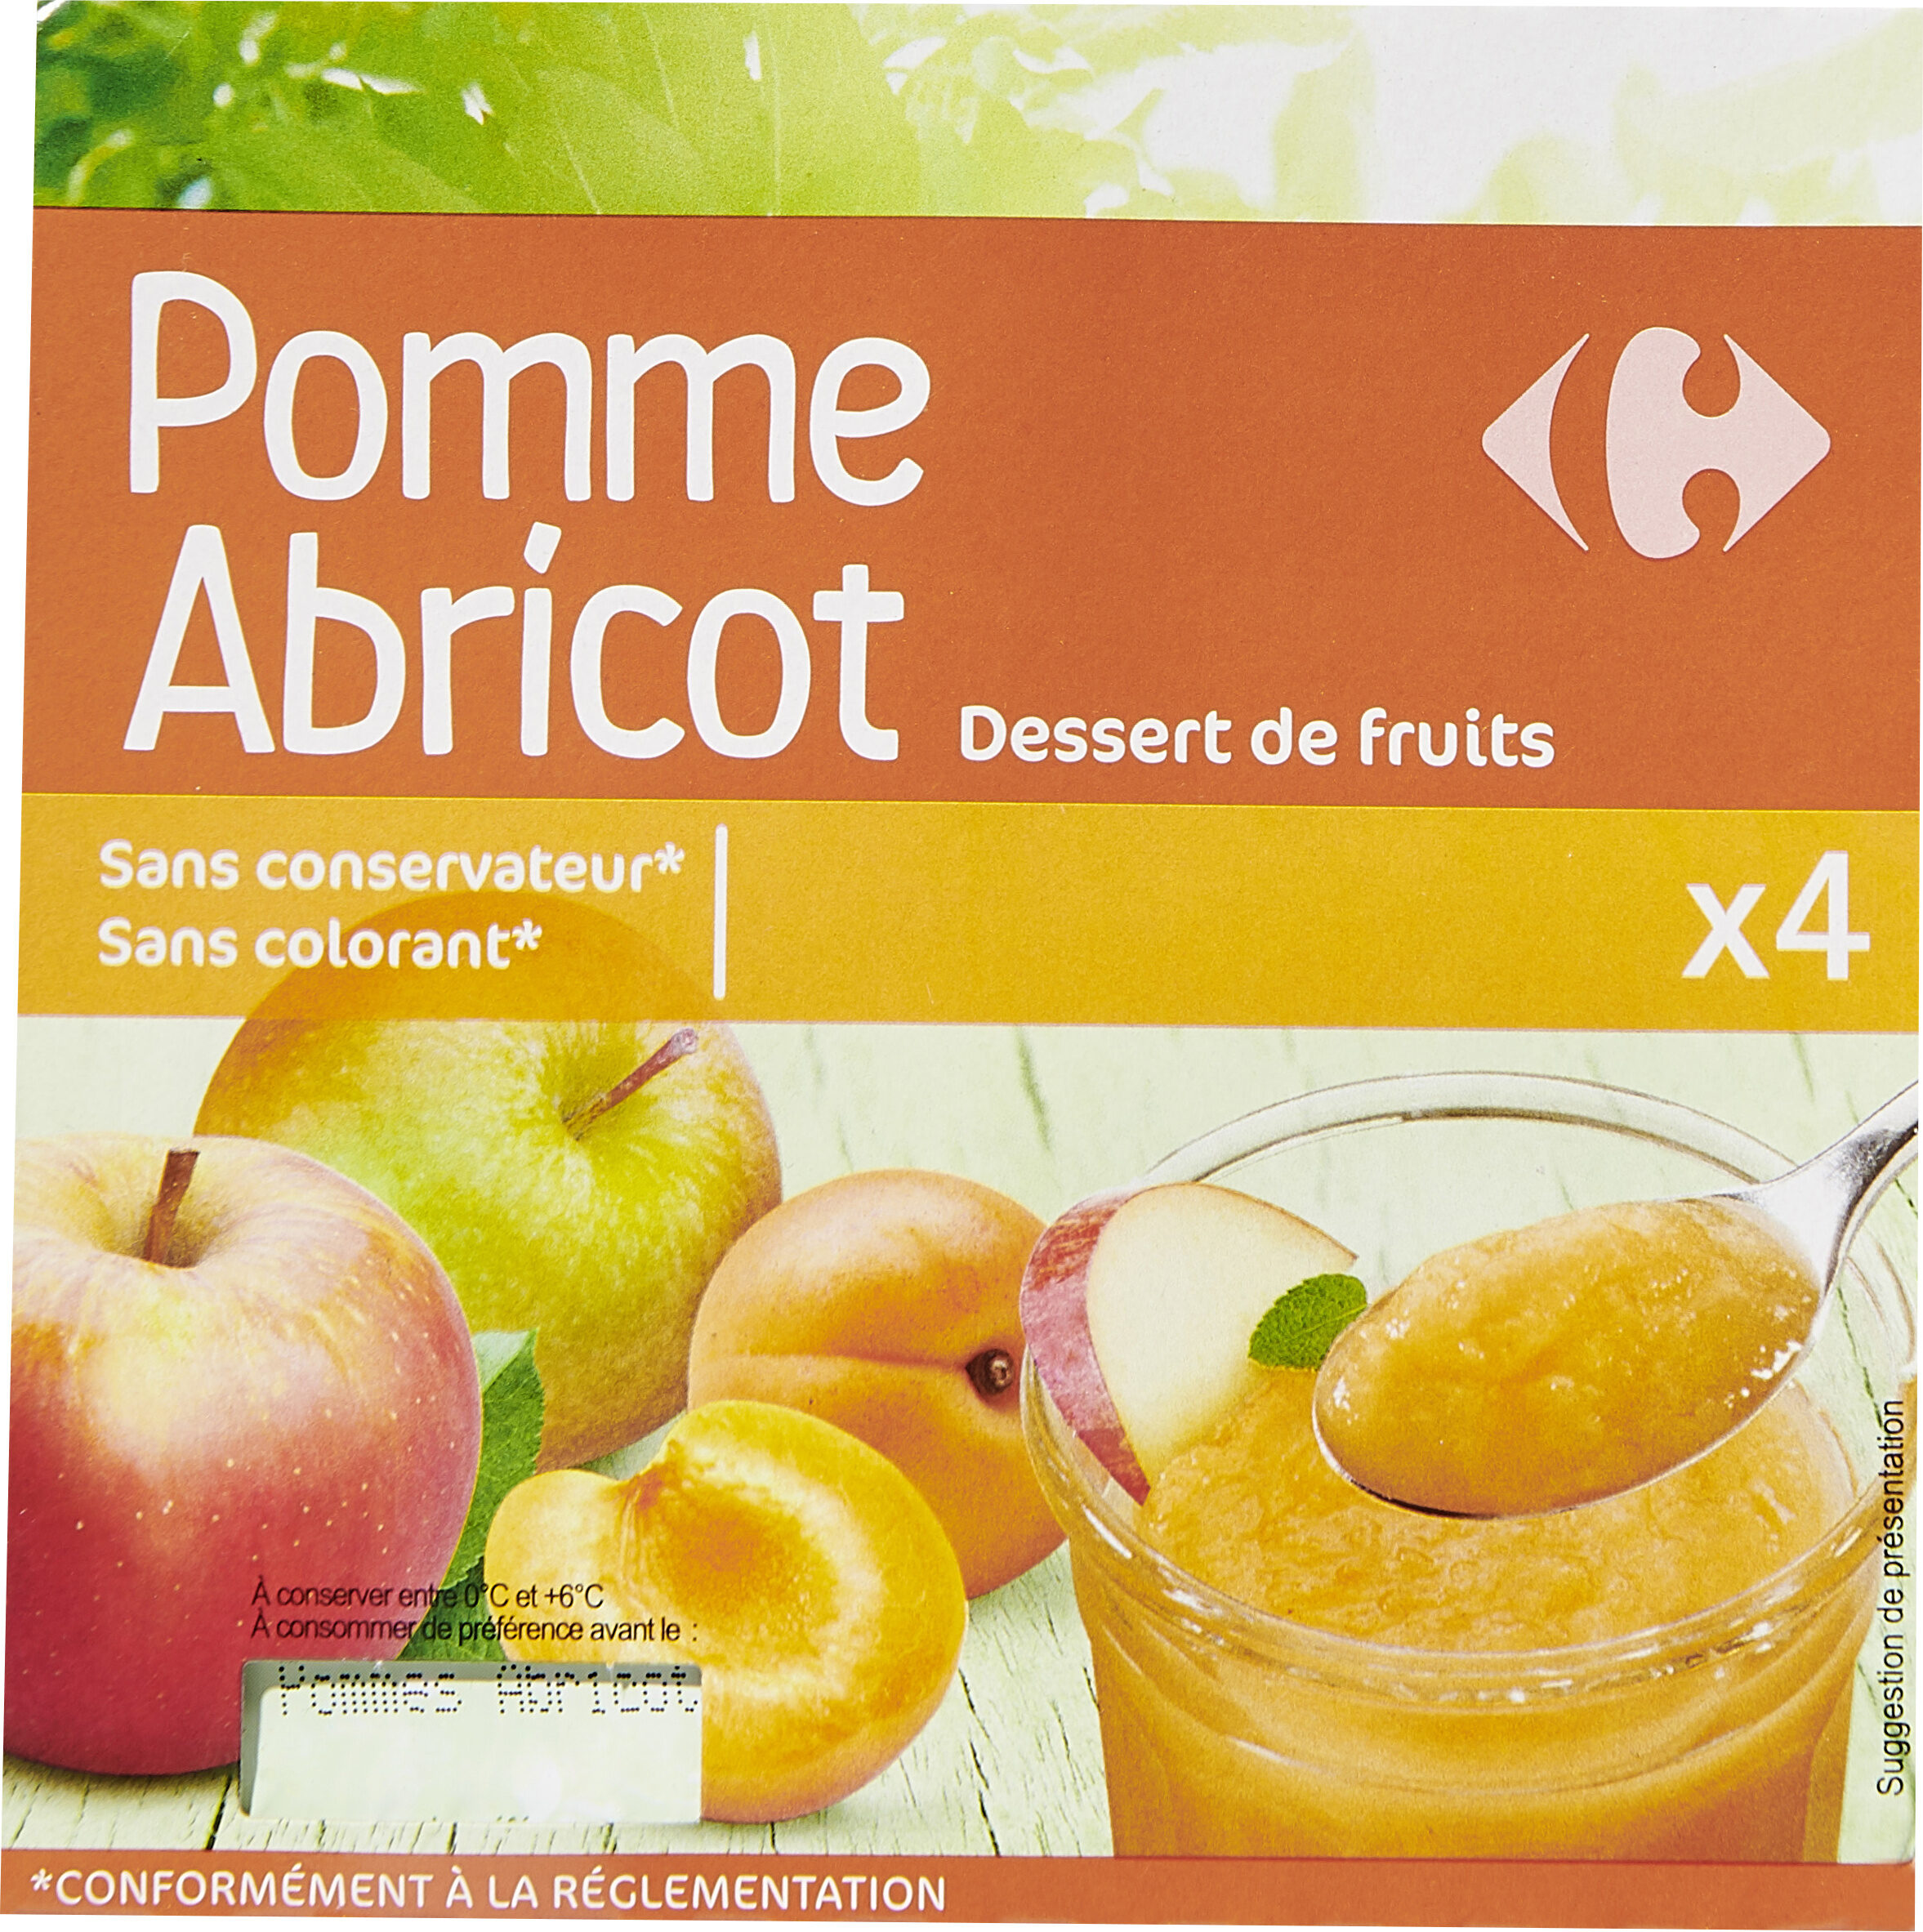 POMME ABRICOT Dessert de fruits - Produit